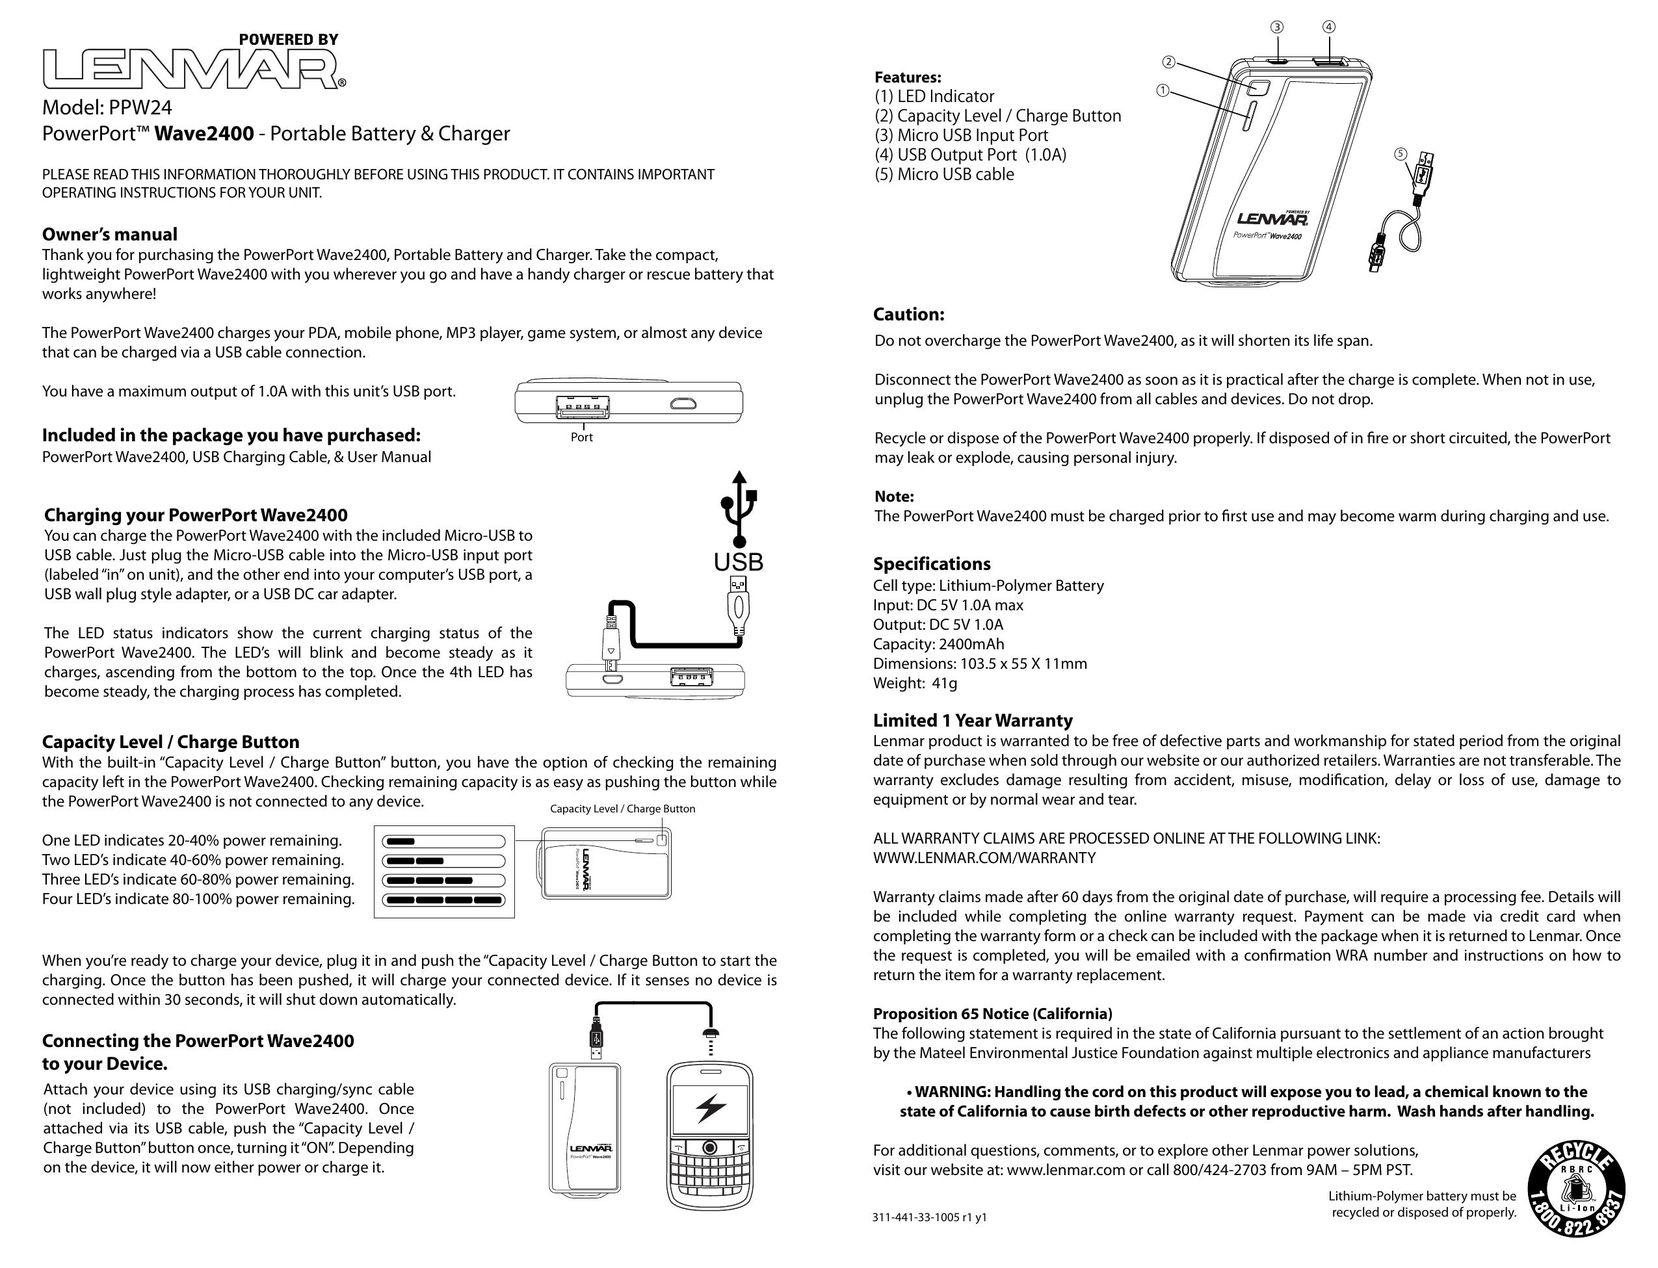 Lenmar Enterprises PPW24 Cell Phone User Manual